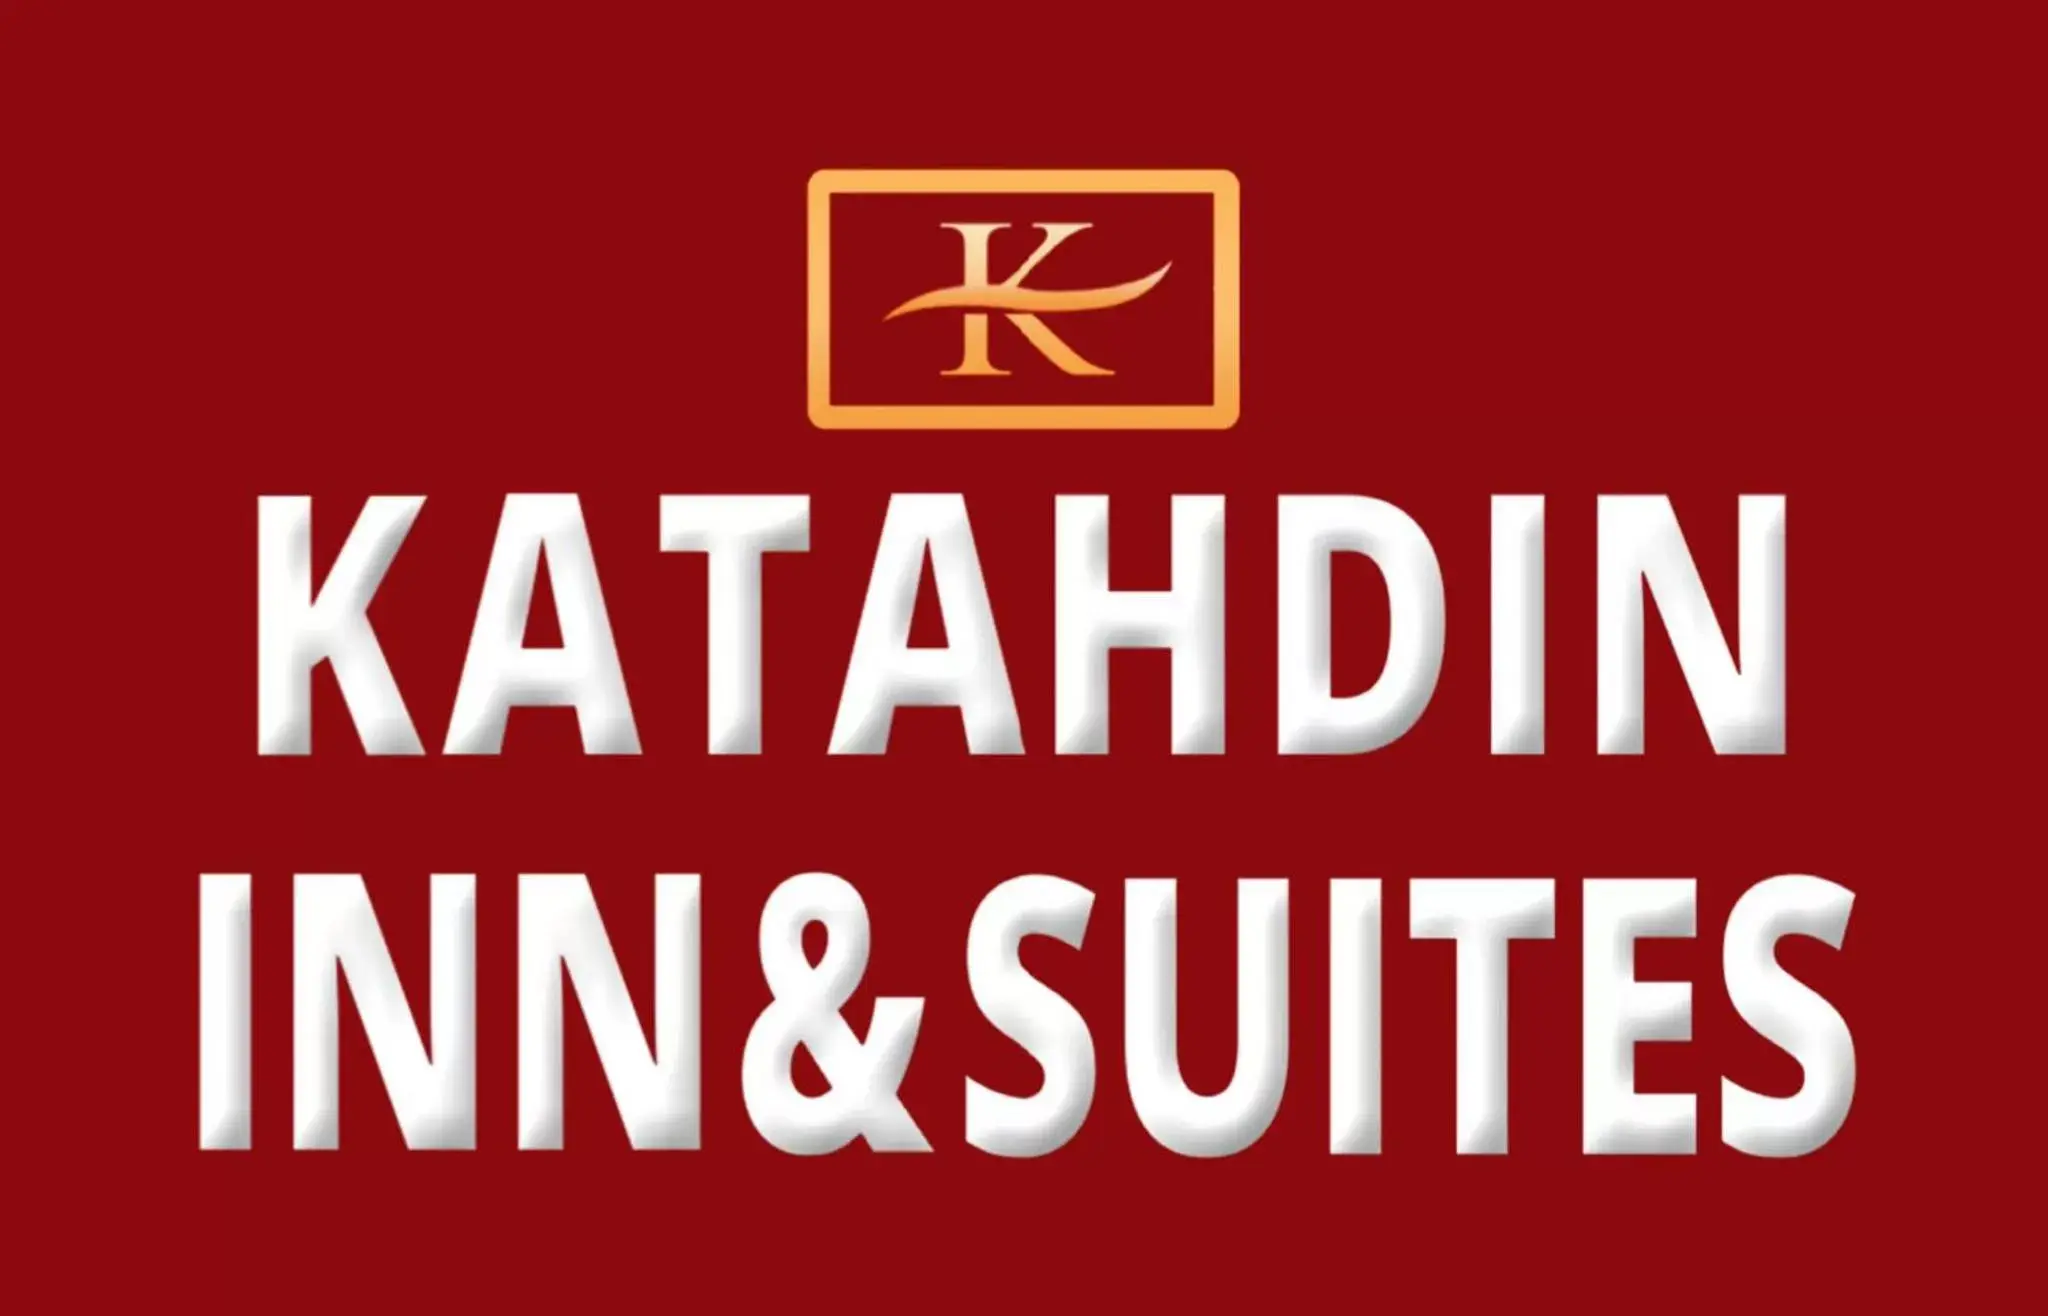 Property logo or sign in Katahdin Inn & Suites